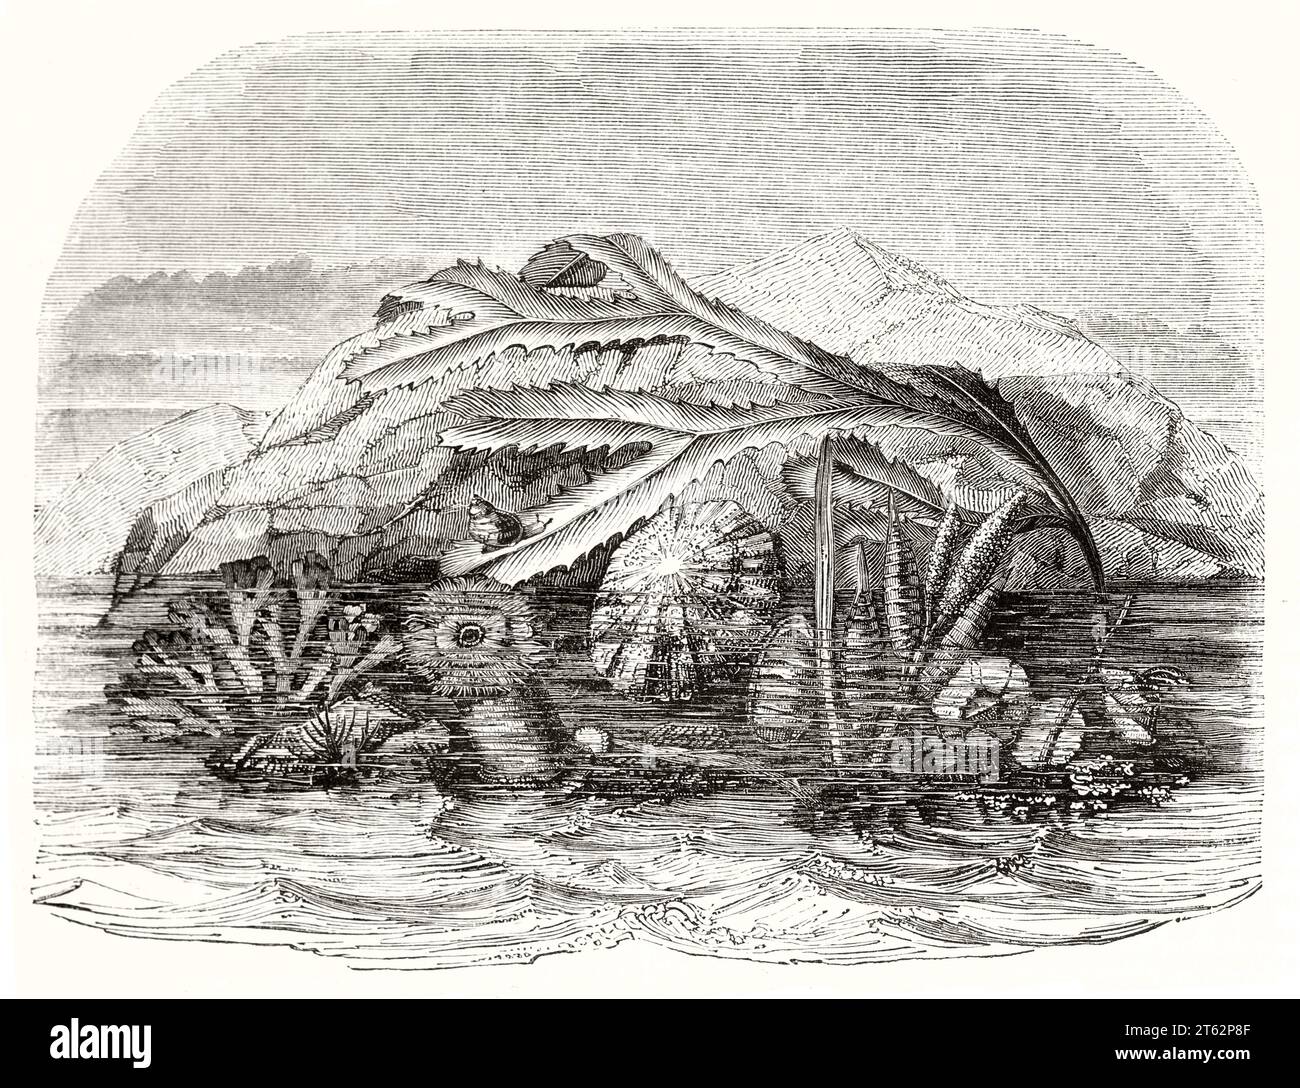 Vieille illustration des formes de vie marine. Par auteur non identifié, publ. Sur magasin pittoresque, Paris, 1849 Banque D'Images